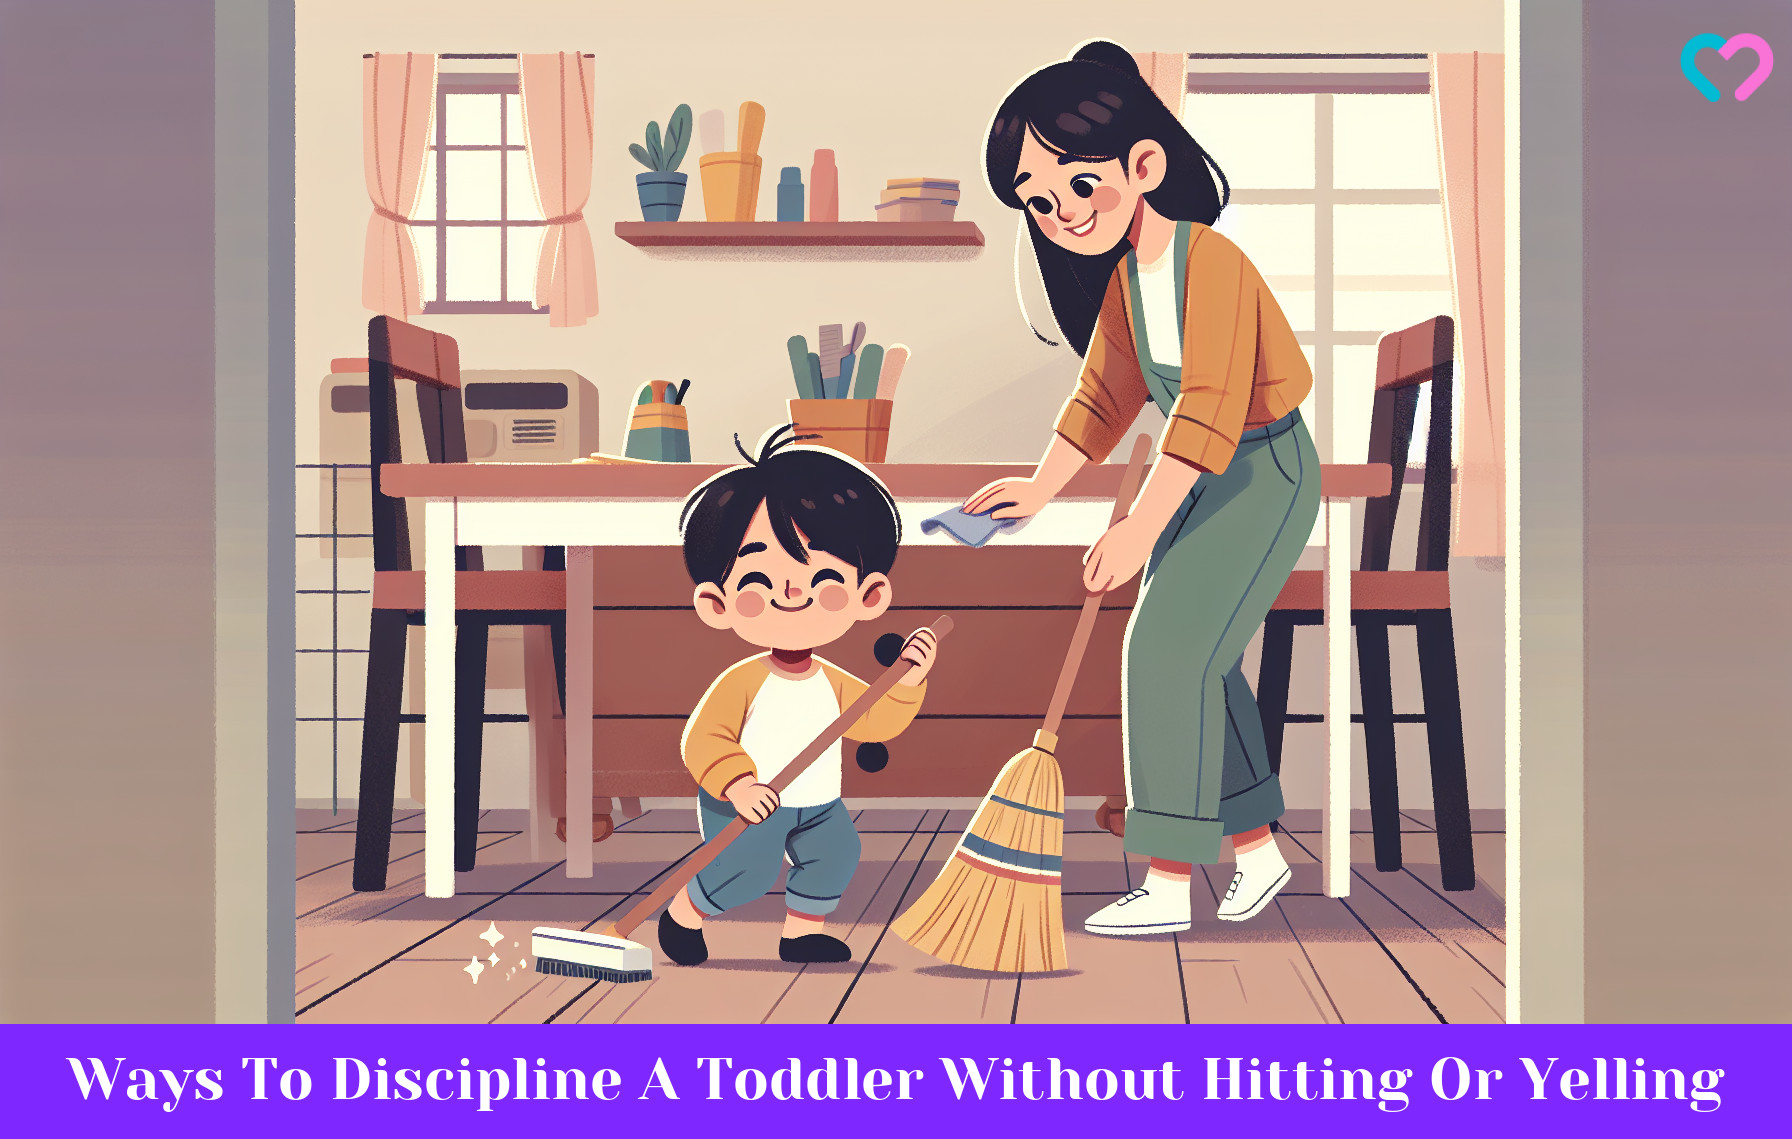 Toddler discipline_illustration